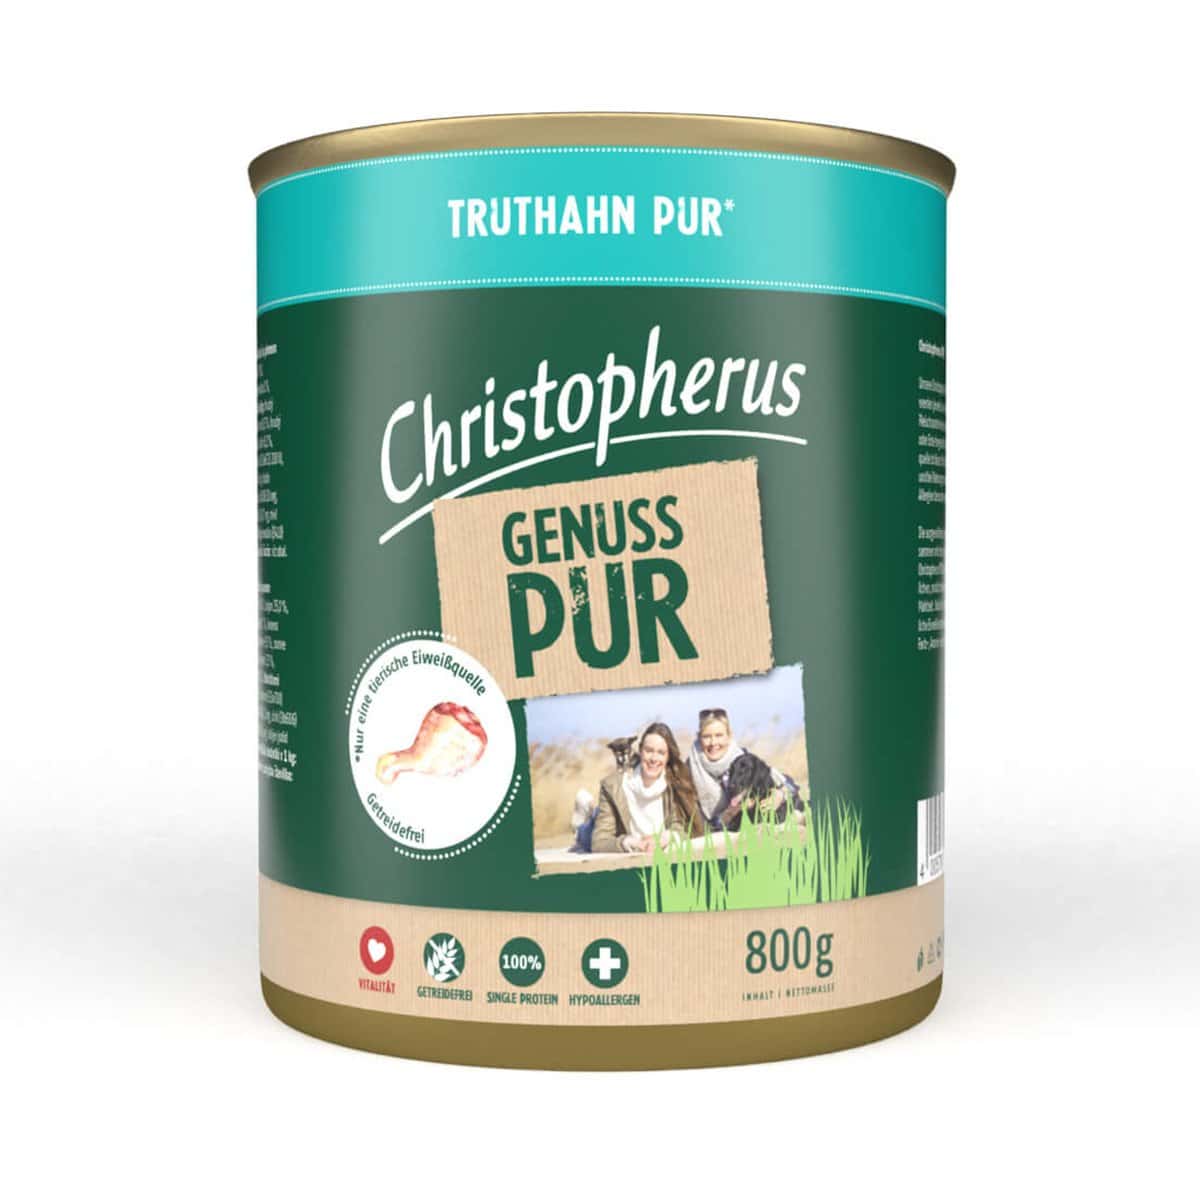 Christopherus Pur – Truthahn 6x800g